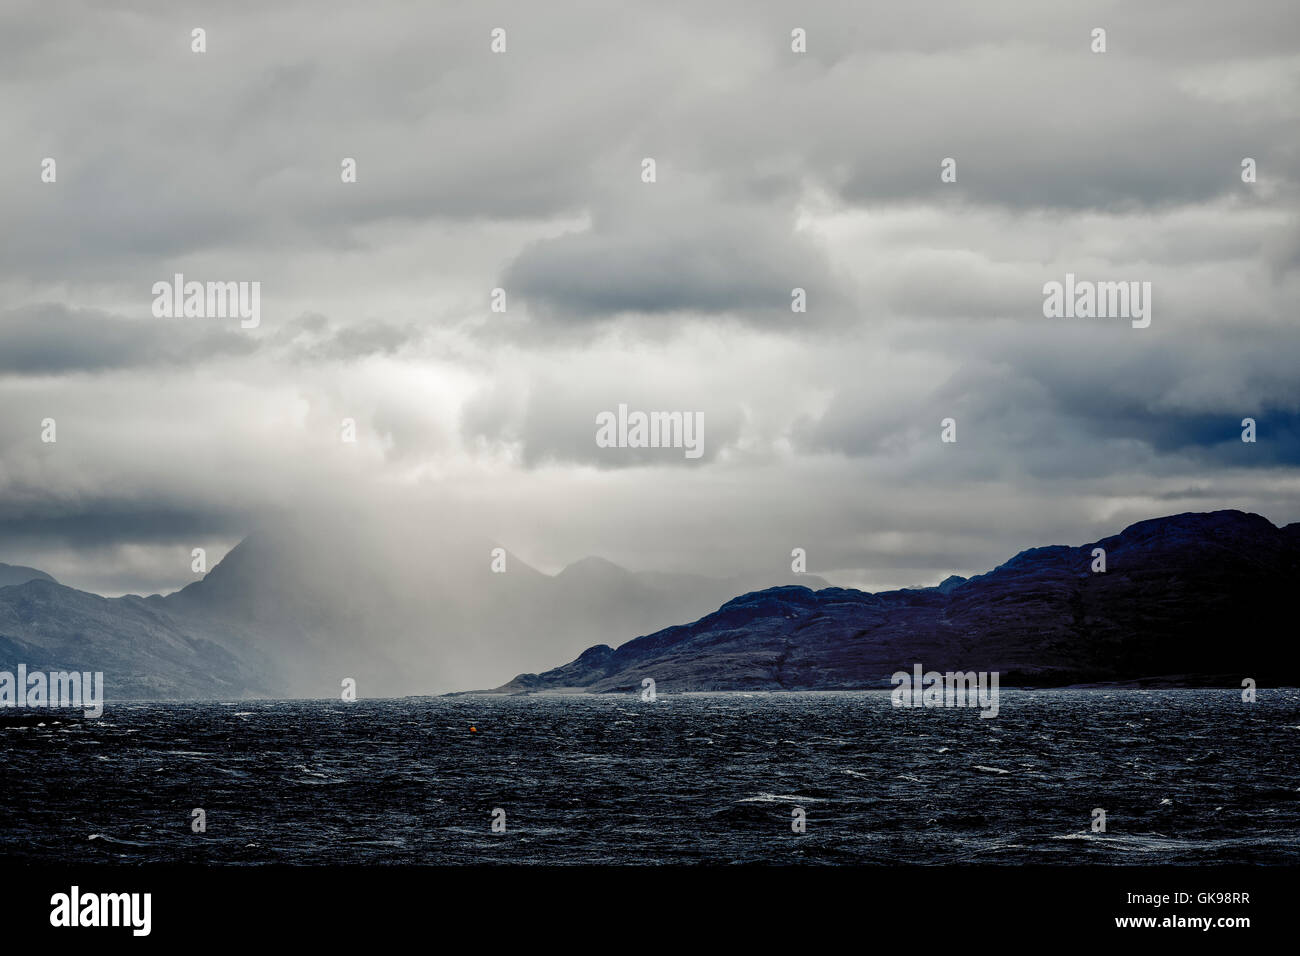 Ciel orageux dans le Sound of Sleat, le plan d'eau qui sépare l'île de Skye en Ecosse's côte continentale. Banque D'Images